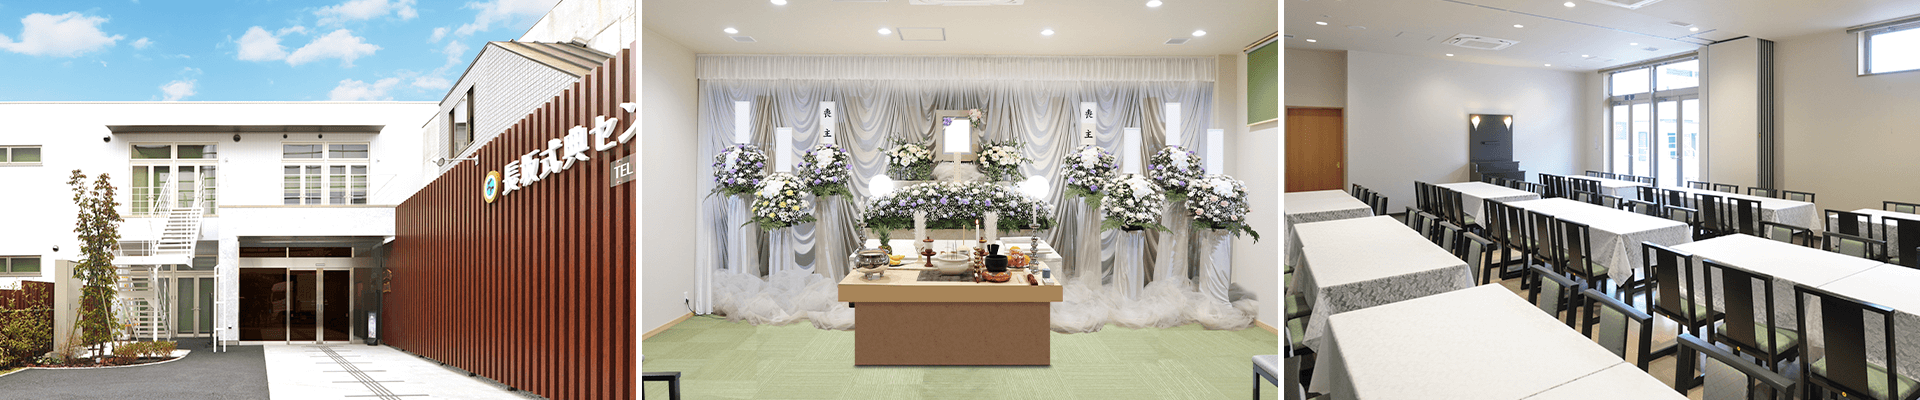 葬儀・葬式・家族葬なら16.5万円からできる長坂式典センター 国立市の葬儀場一覧